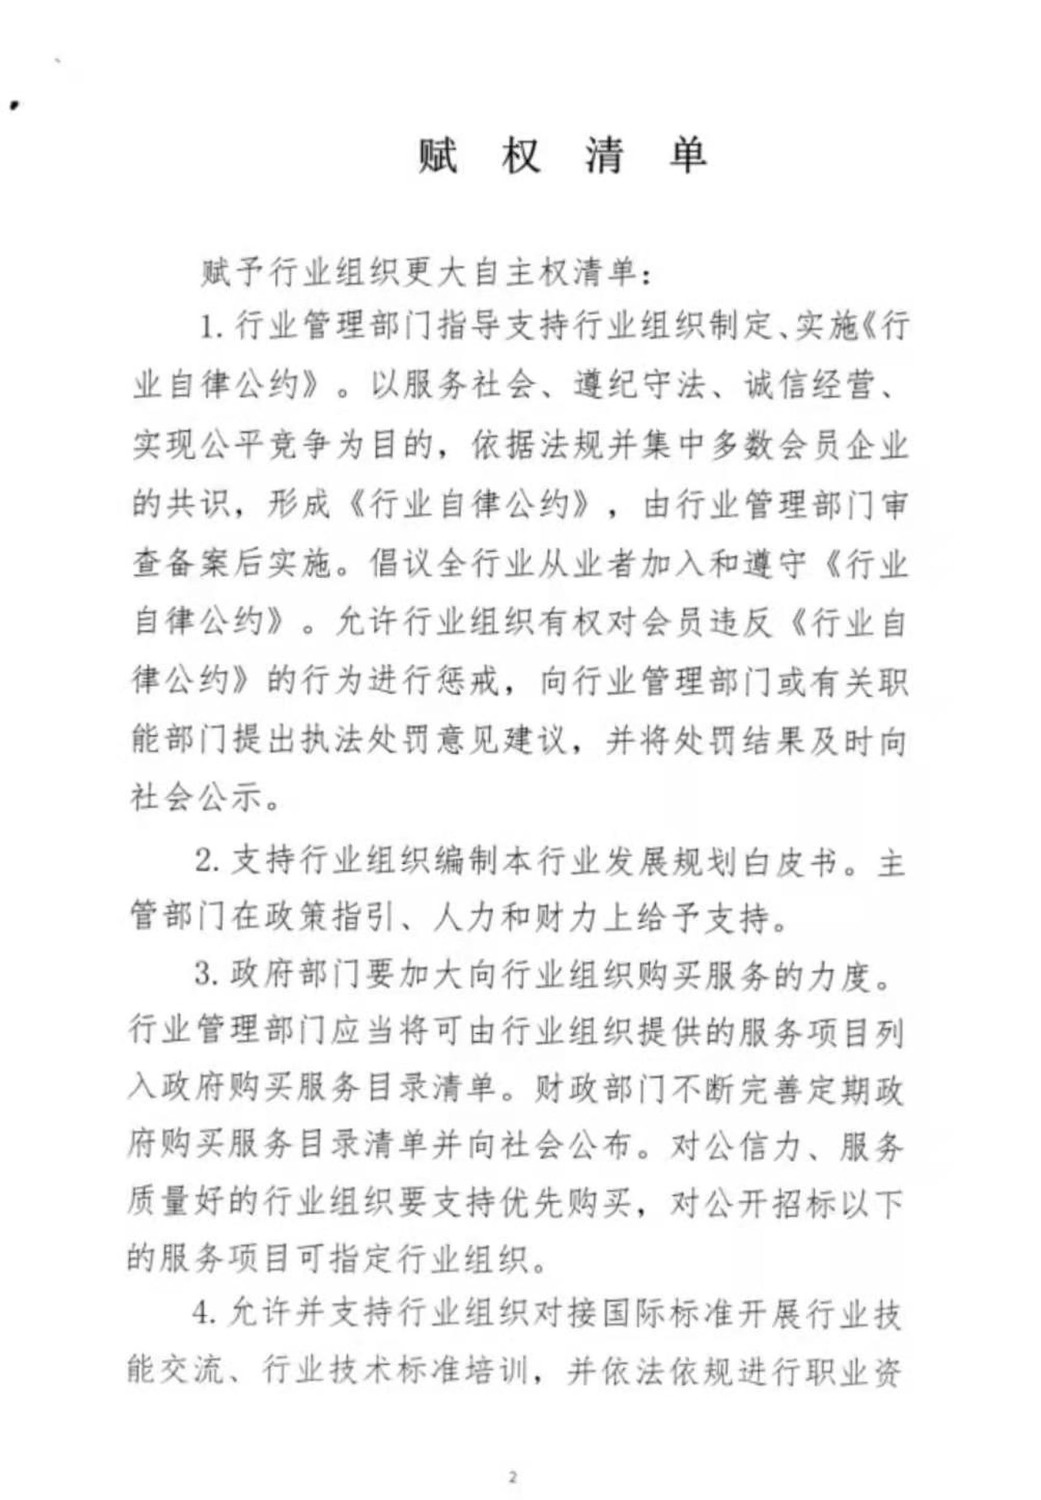 海南社会组织授赋权文件征求意见-2.jpg